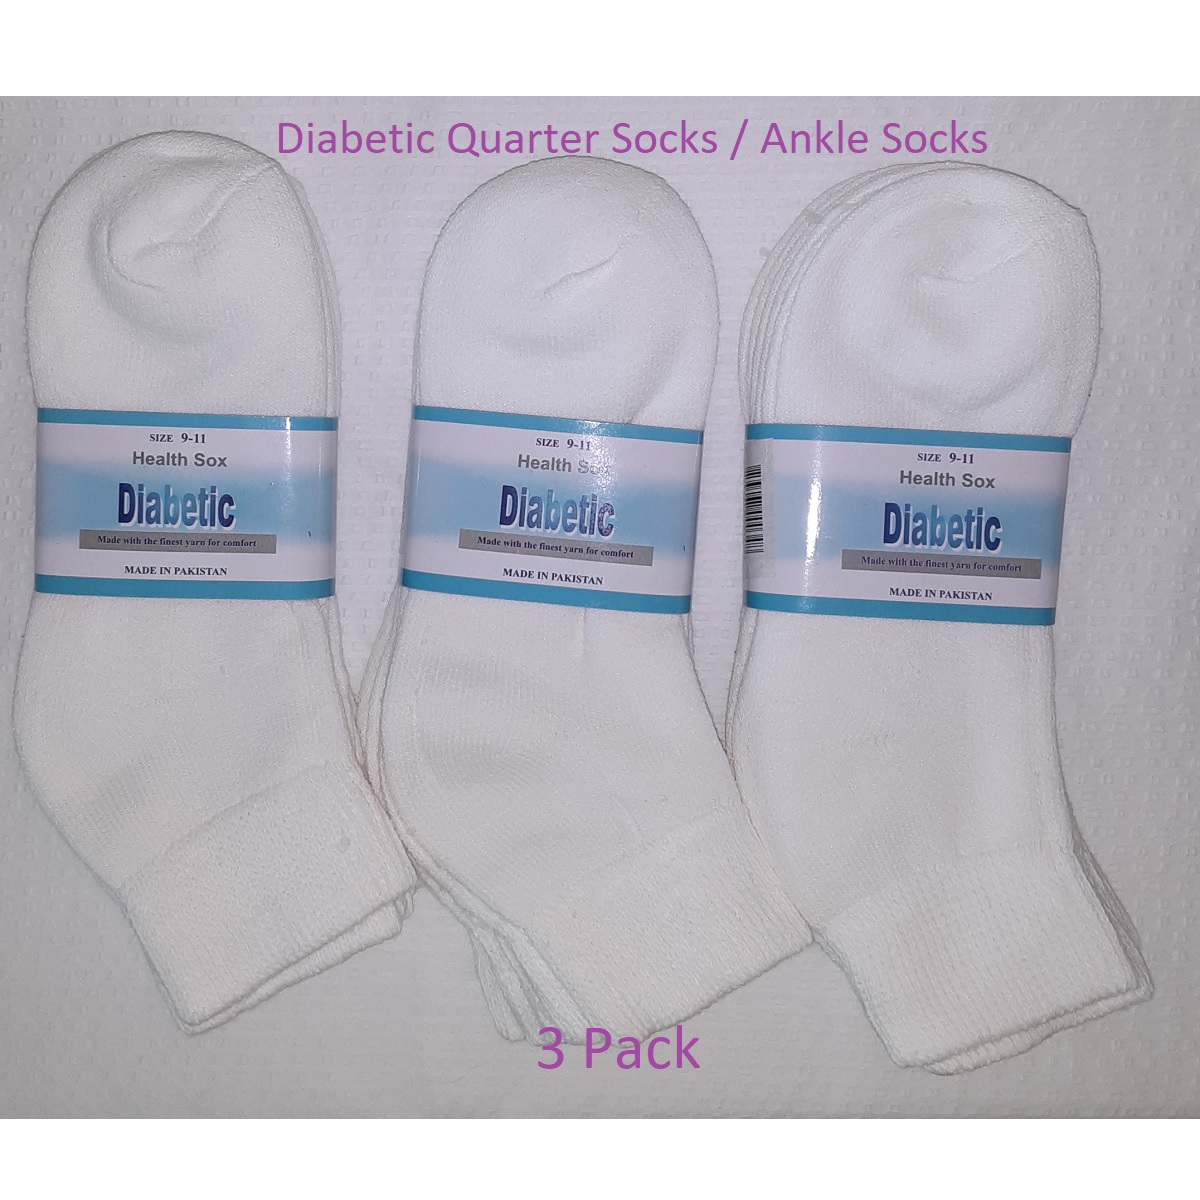 Men's White Diabetic Quarter Socks / Ankle Socks - set of 3 pairs